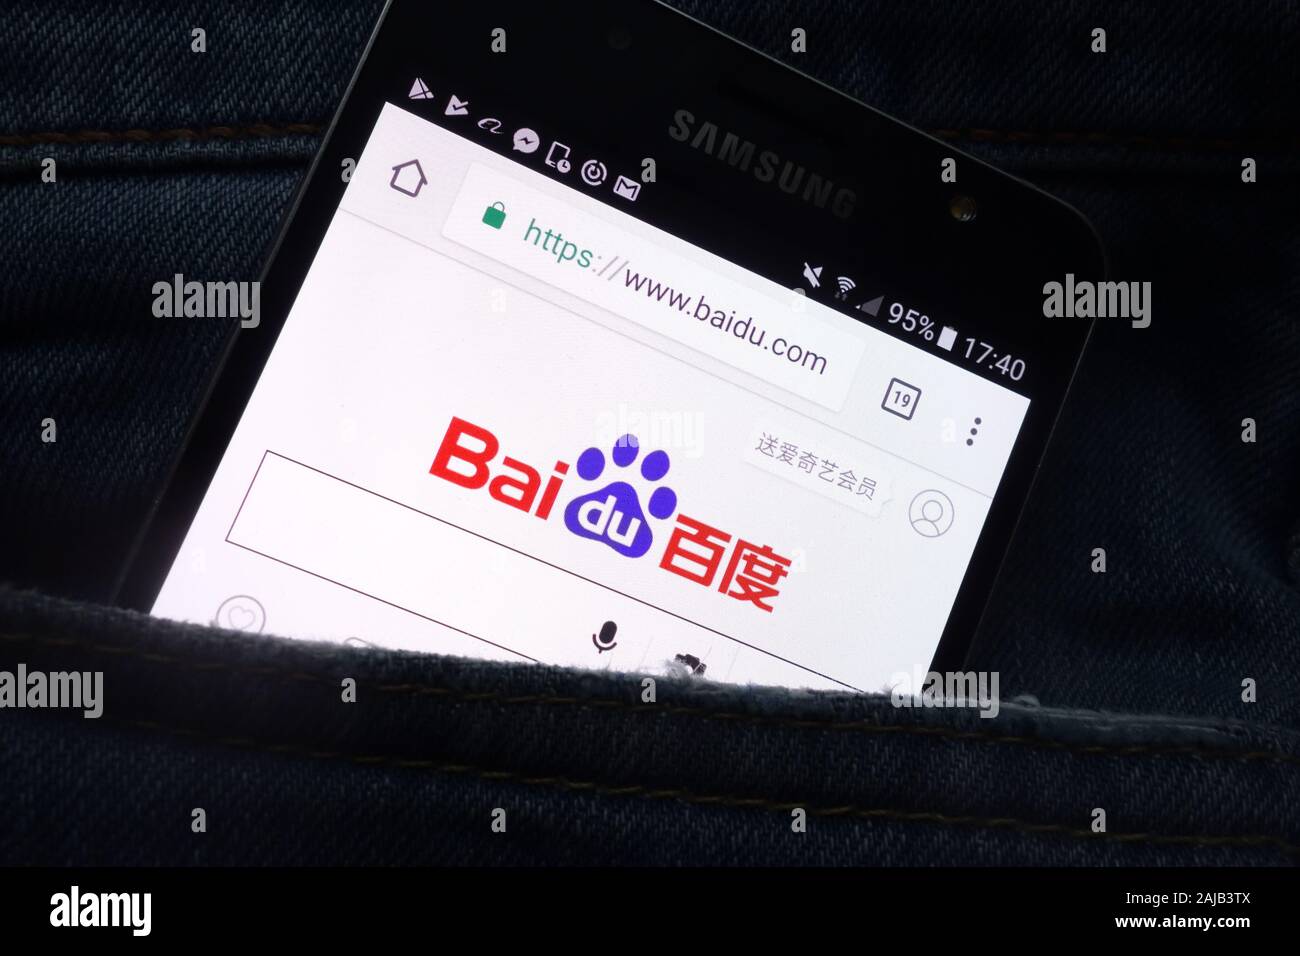 Site internet Baidu affiche sur smartphone Samsung cachés dans la poche de jeans Banque D'Images